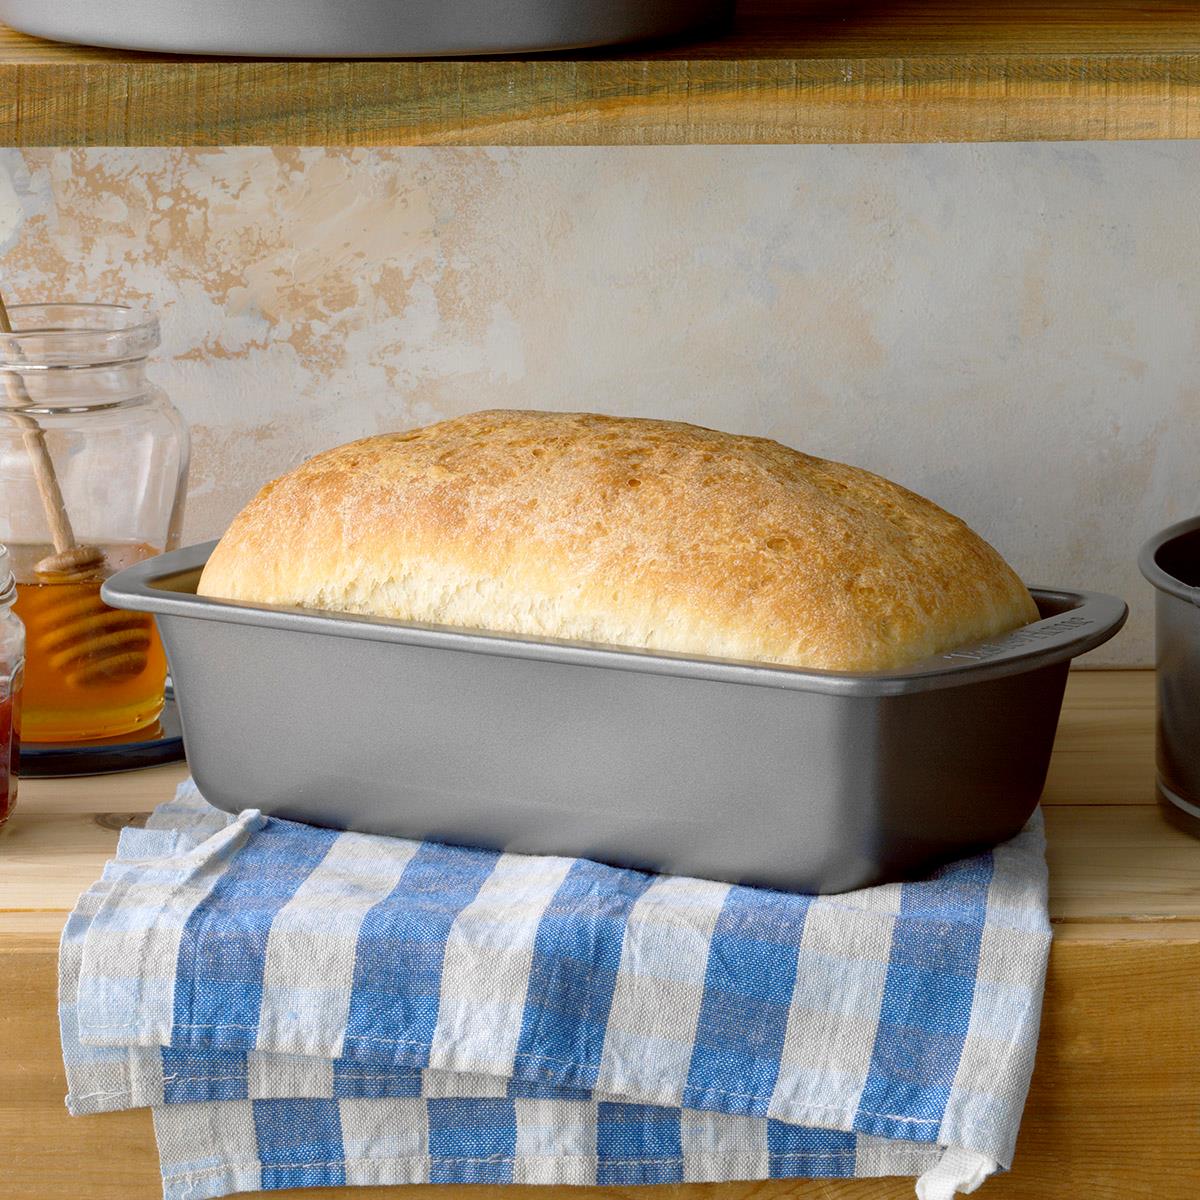 Basic Homemade Bread Recipe | Taste of Home